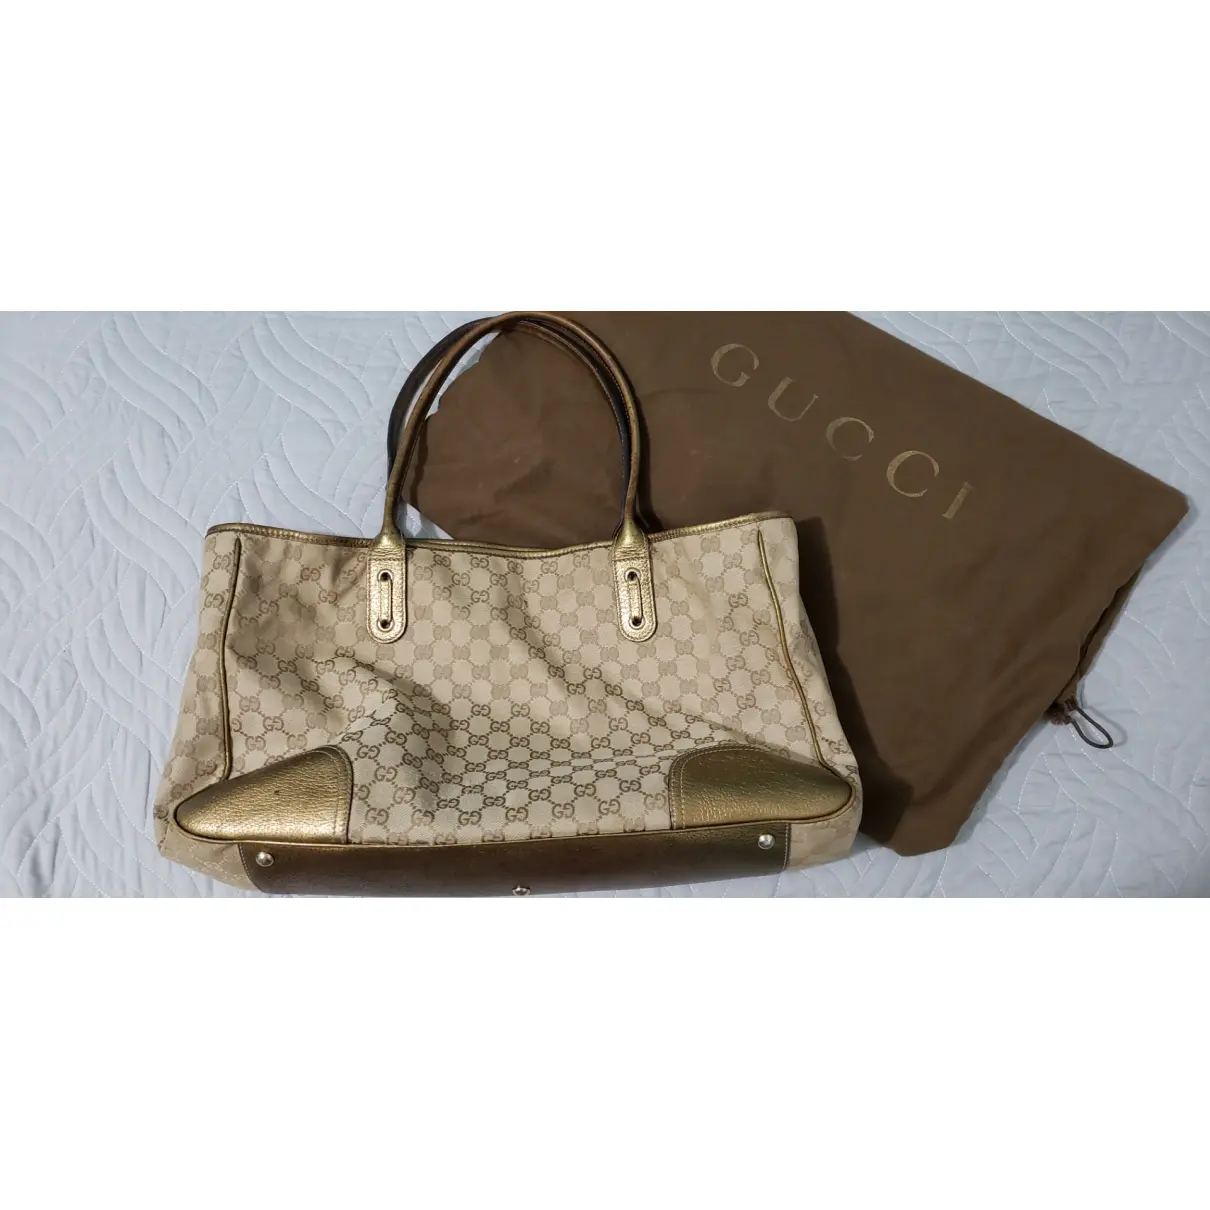 Princy cloth handbag Gucci